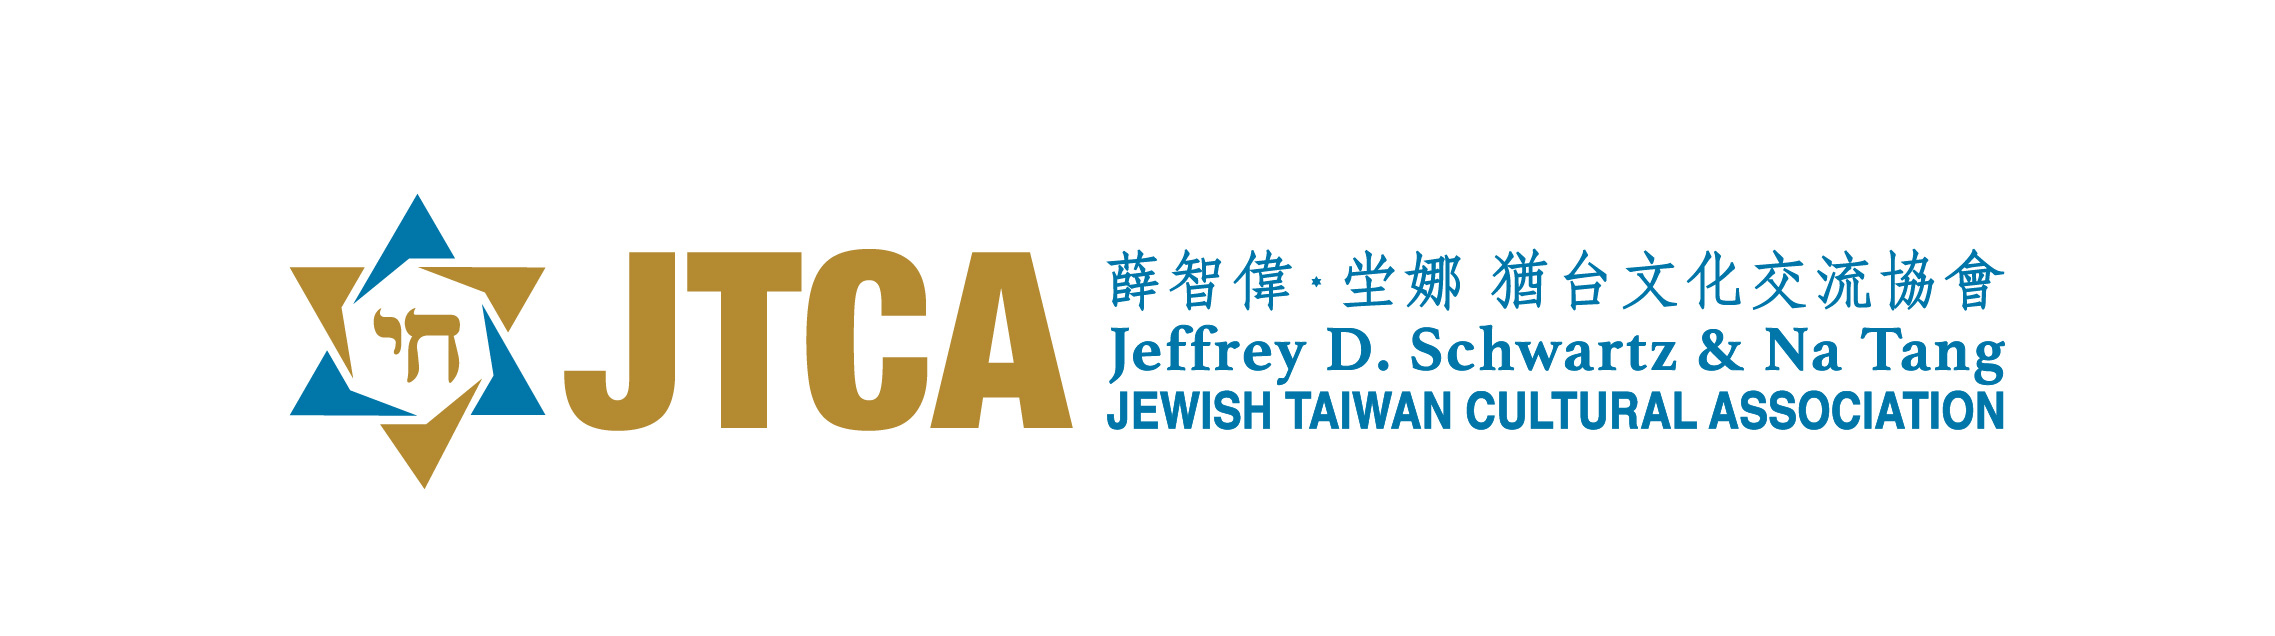 Jewish Taiwan Cultural Association (JTCA)